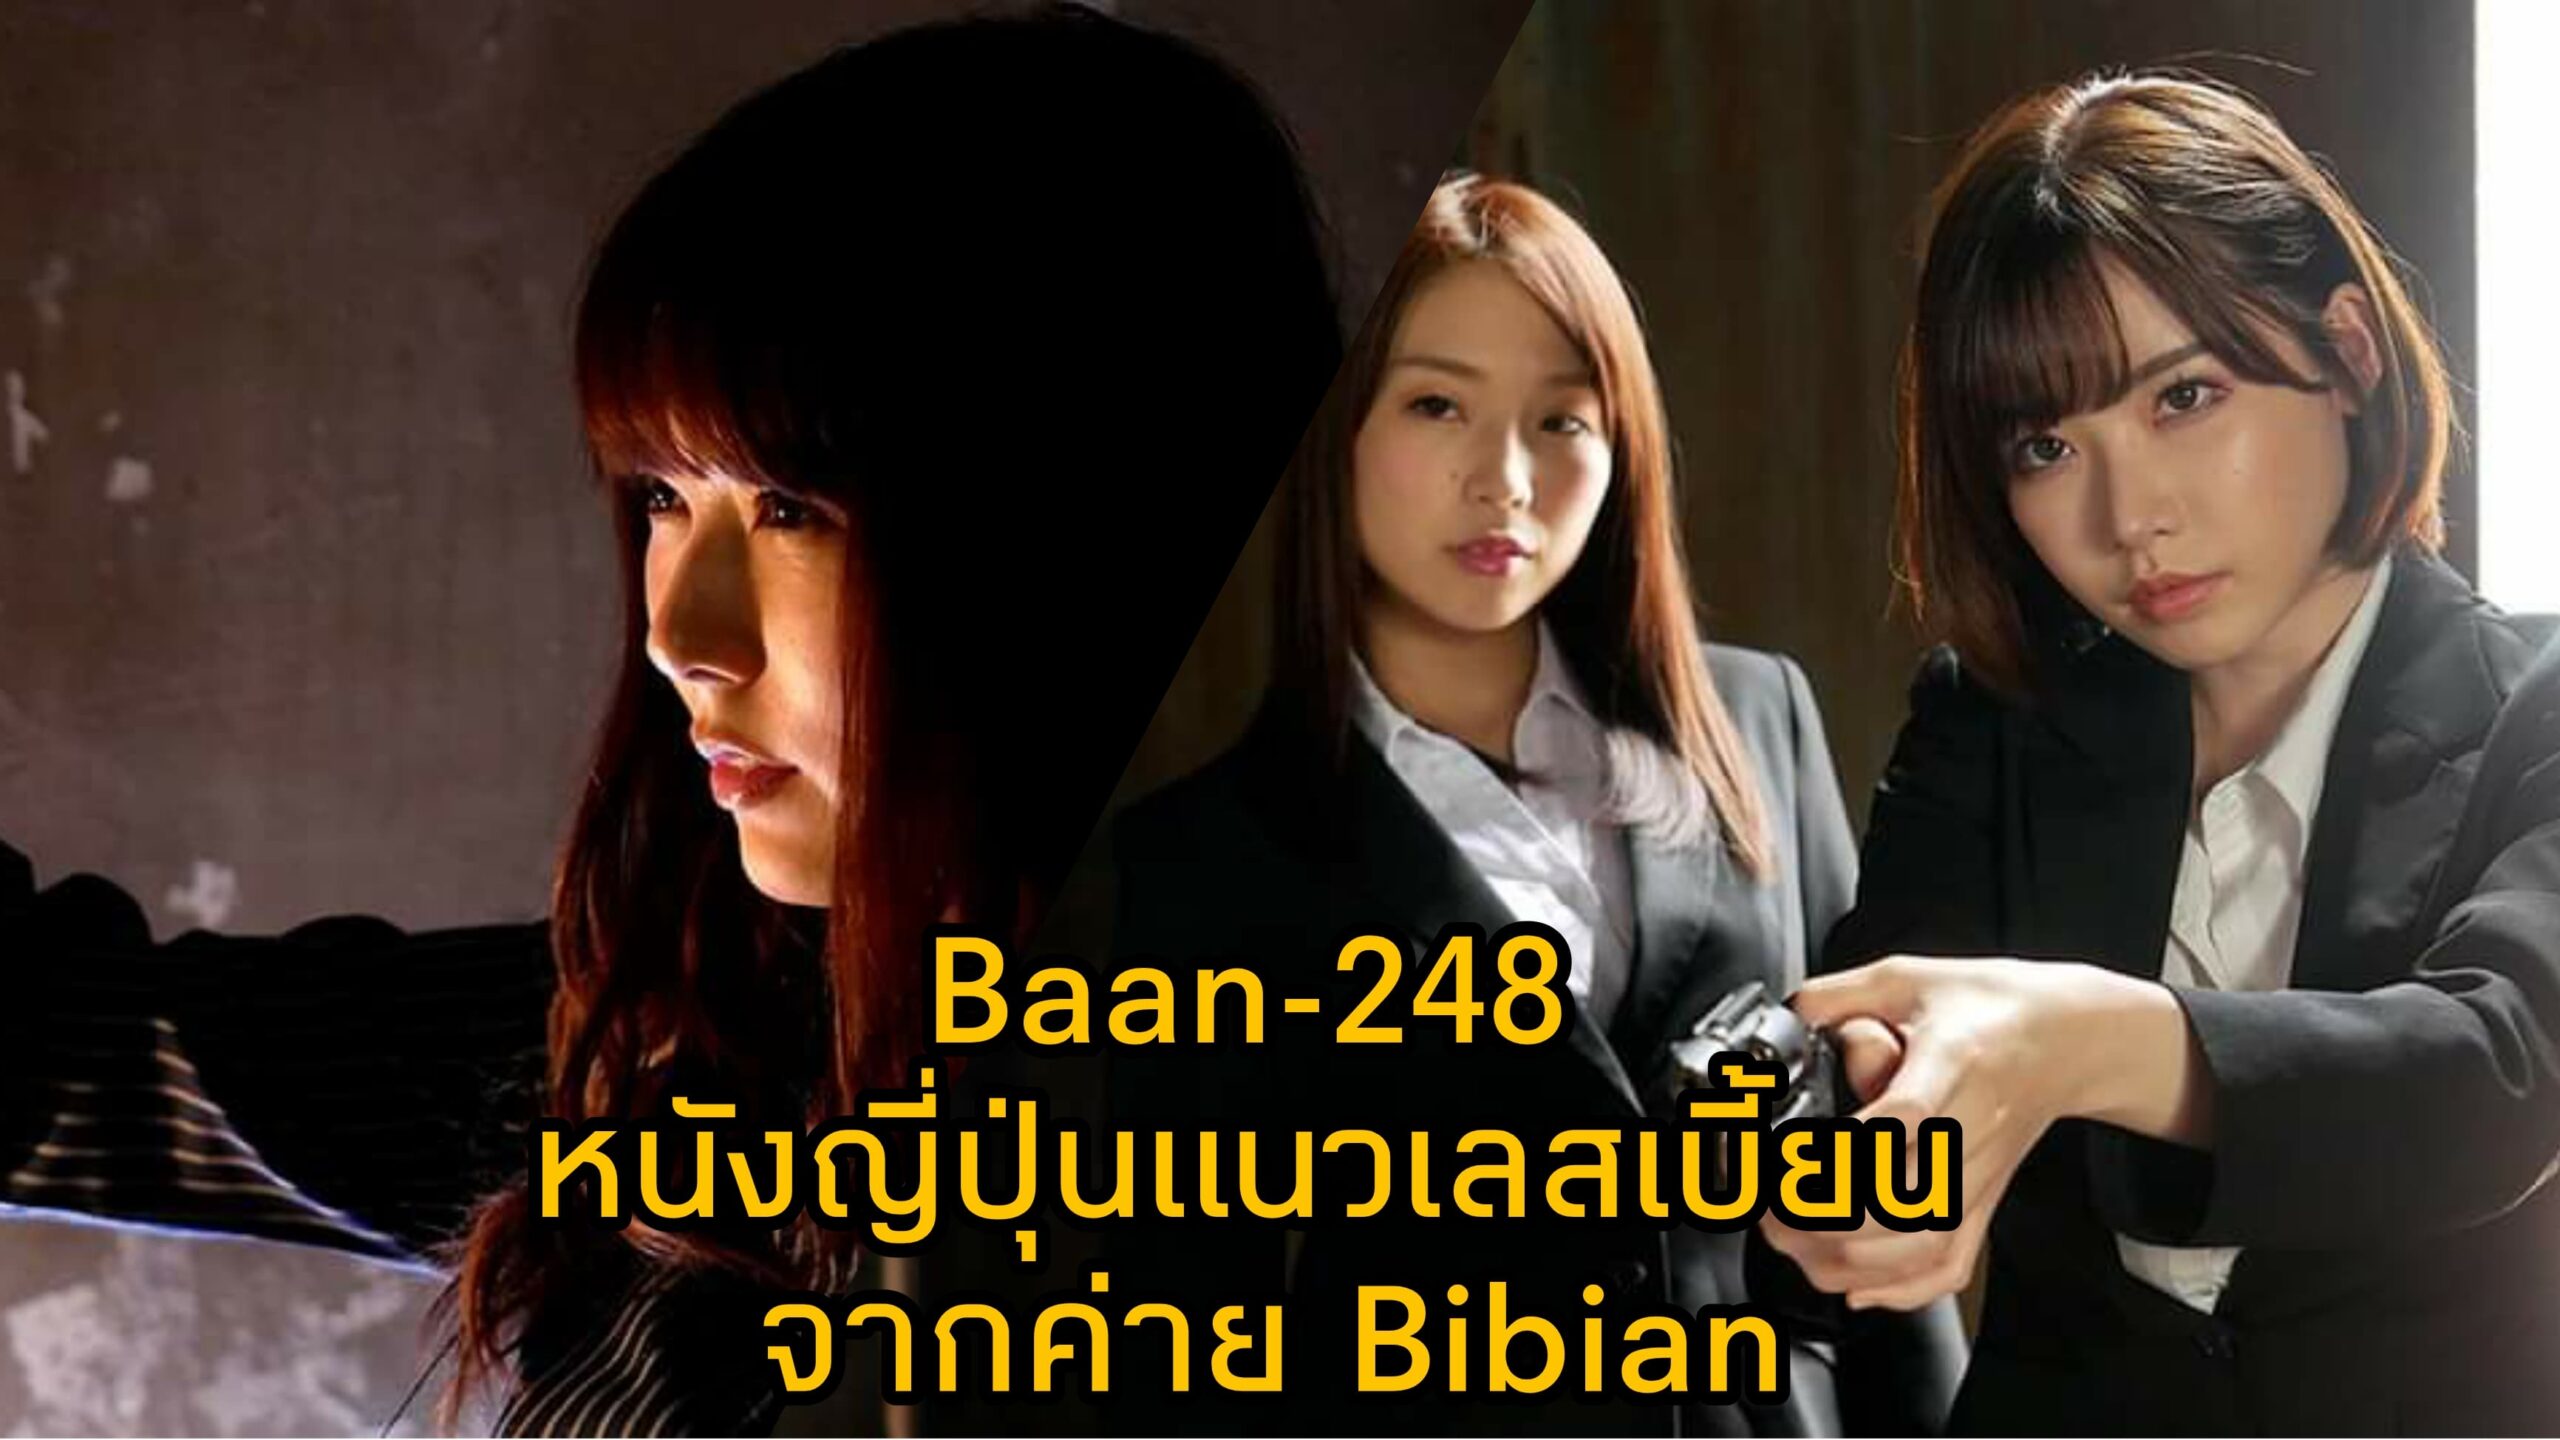 Bann-248 หนัง JAV แนวเลสเบี้ยน นำแสดงโดย 3 ตัวแม่แห่งวงการเอวี Eimi Fukada 5